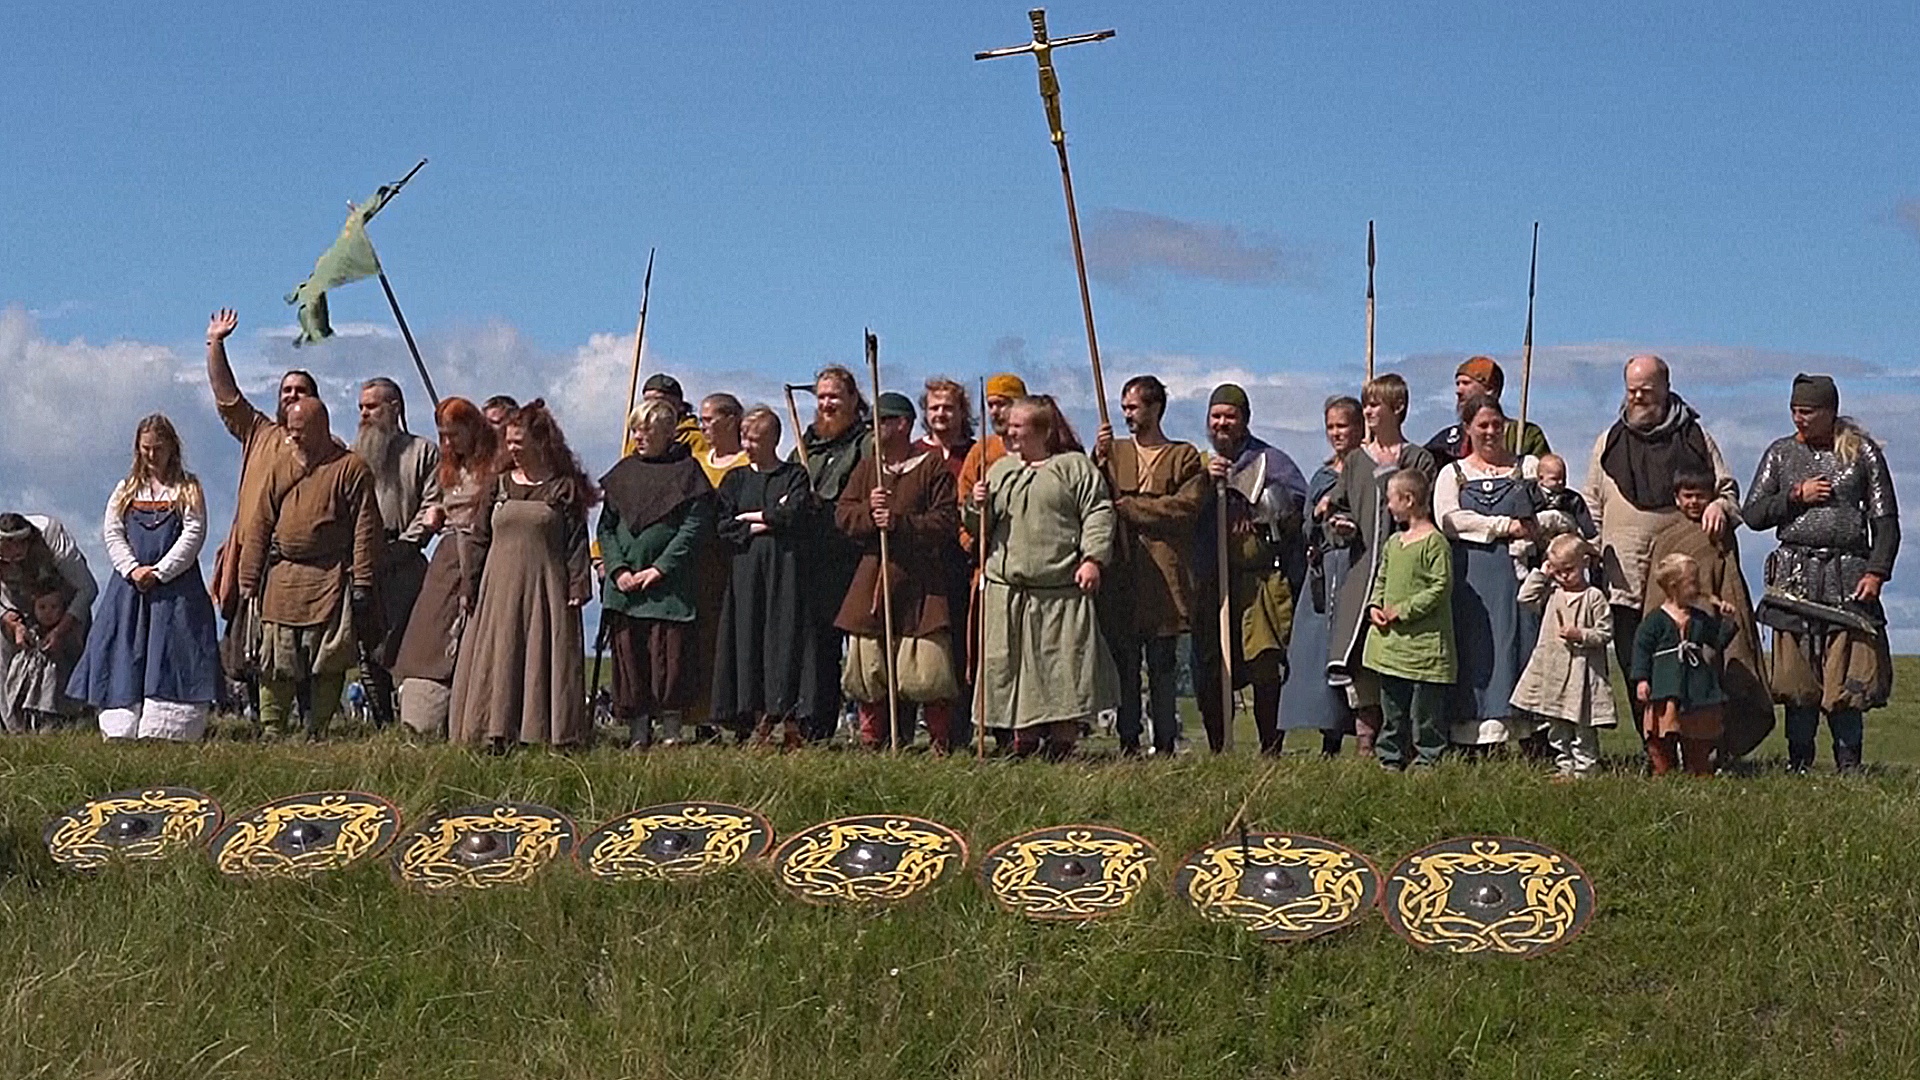 Реконструкцию боёв викингов провели в Дании